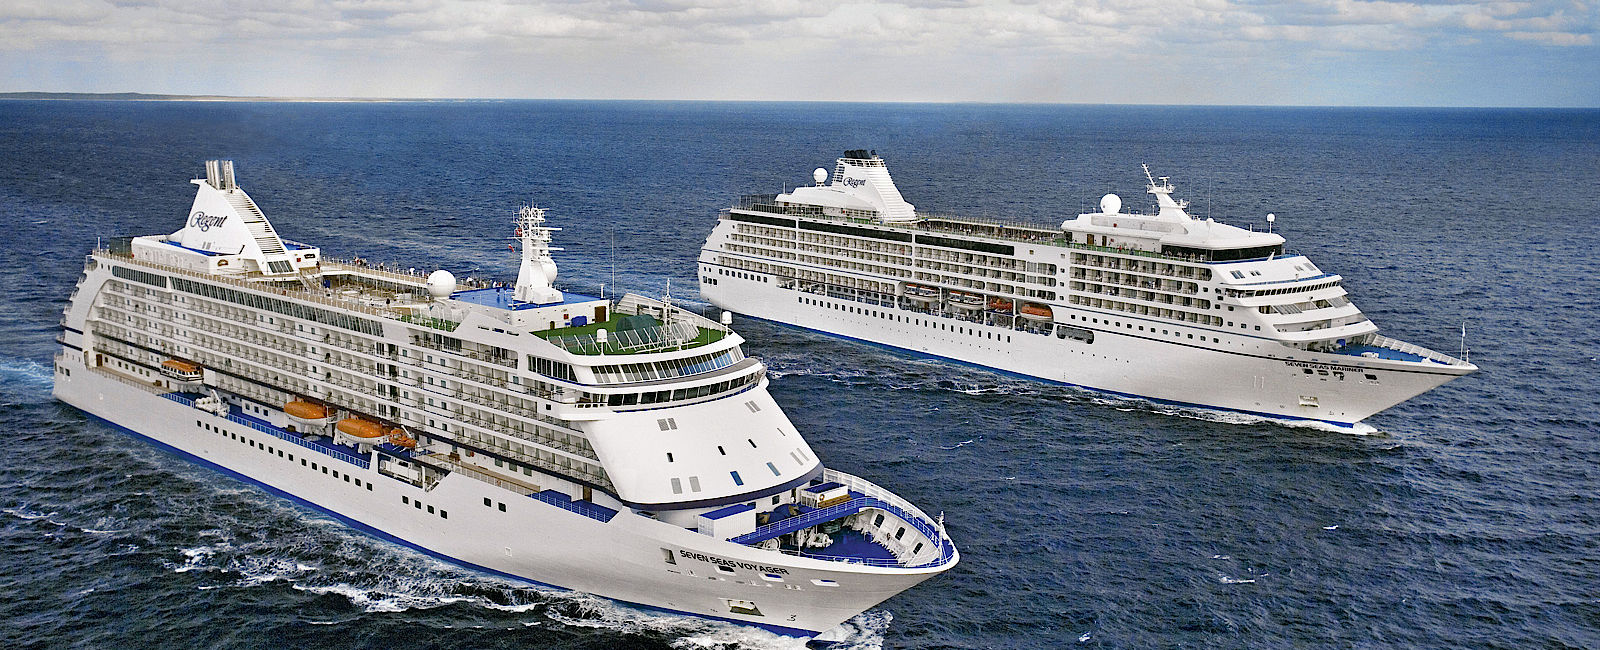 VERY SPECIAL HOTEL
 Regent Seven Seas Cruises 
 Auf allen sieben Weltmeeren 